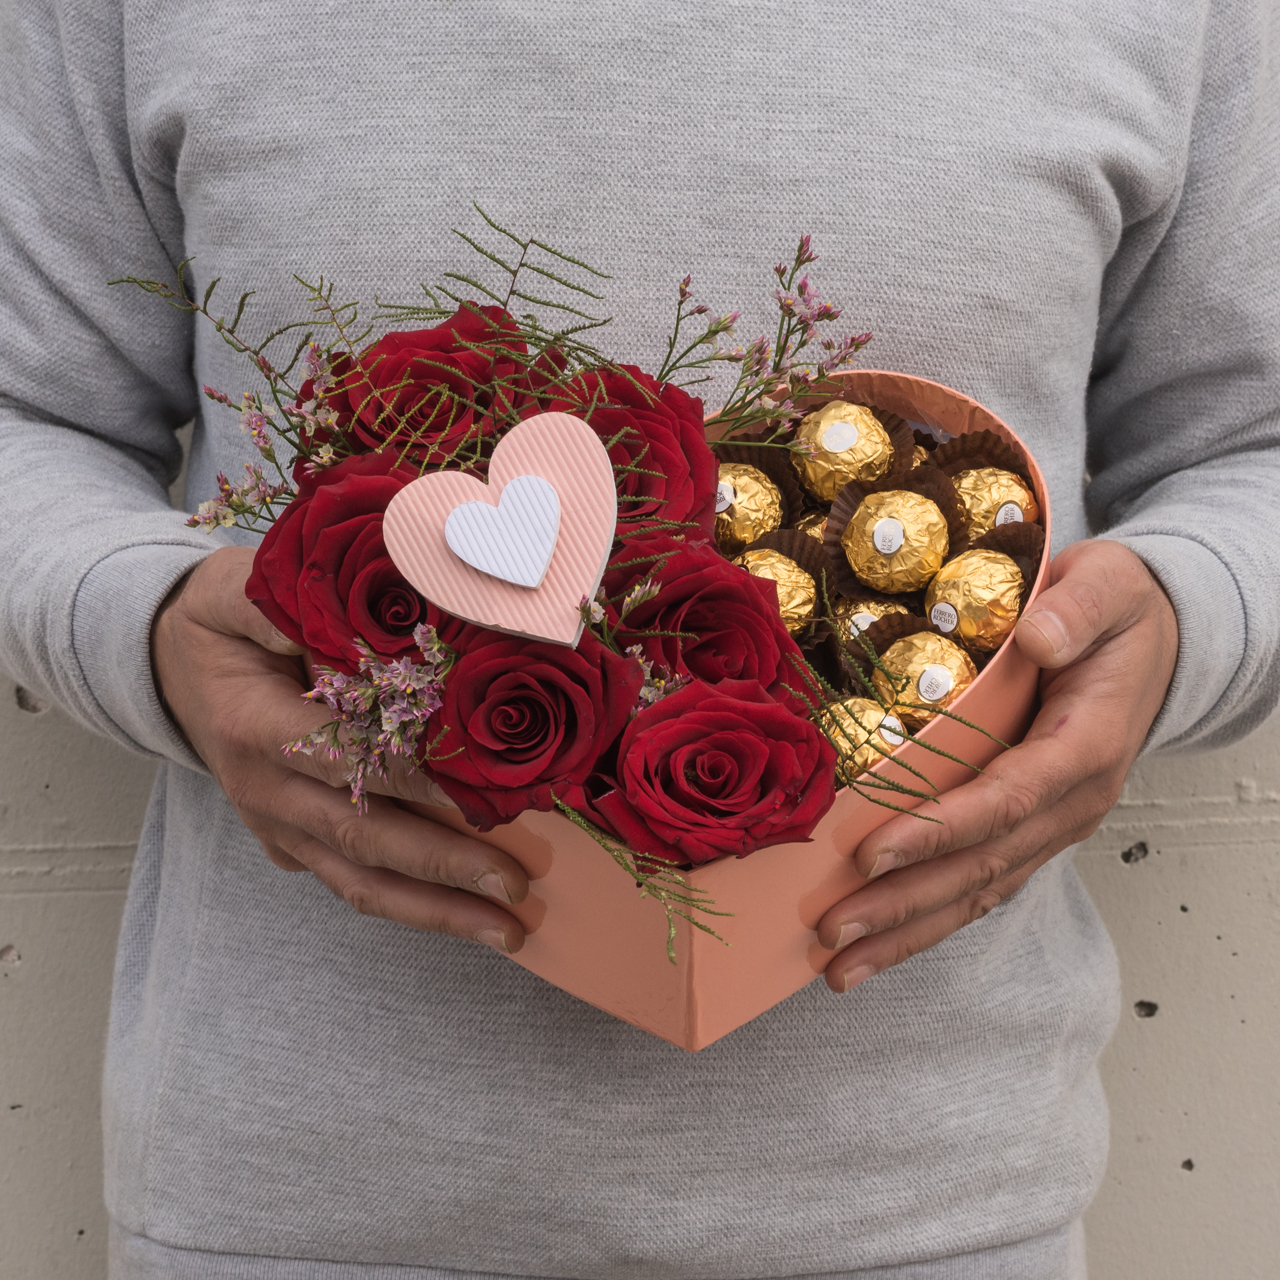 Regalo corazón y chocolates, ideal para enamorados y día de San